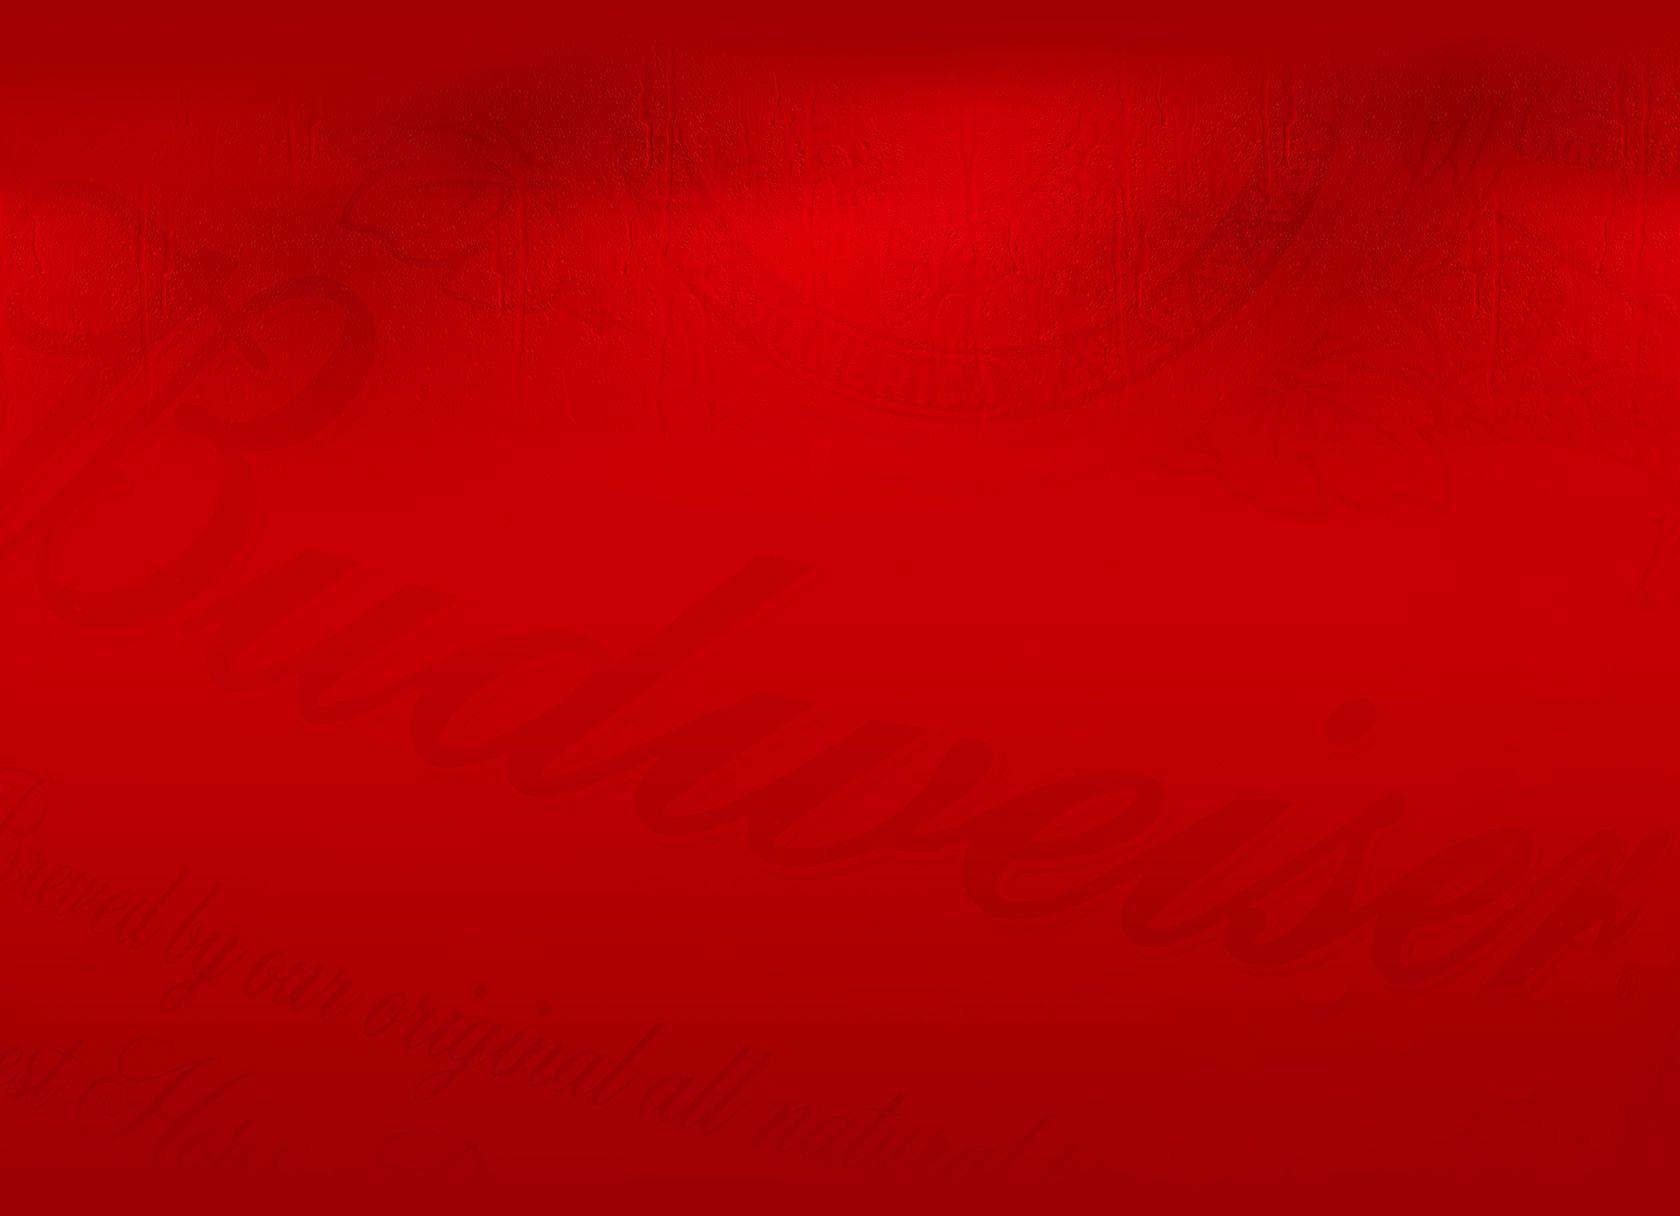 Red Background 53 Background. Wallruru